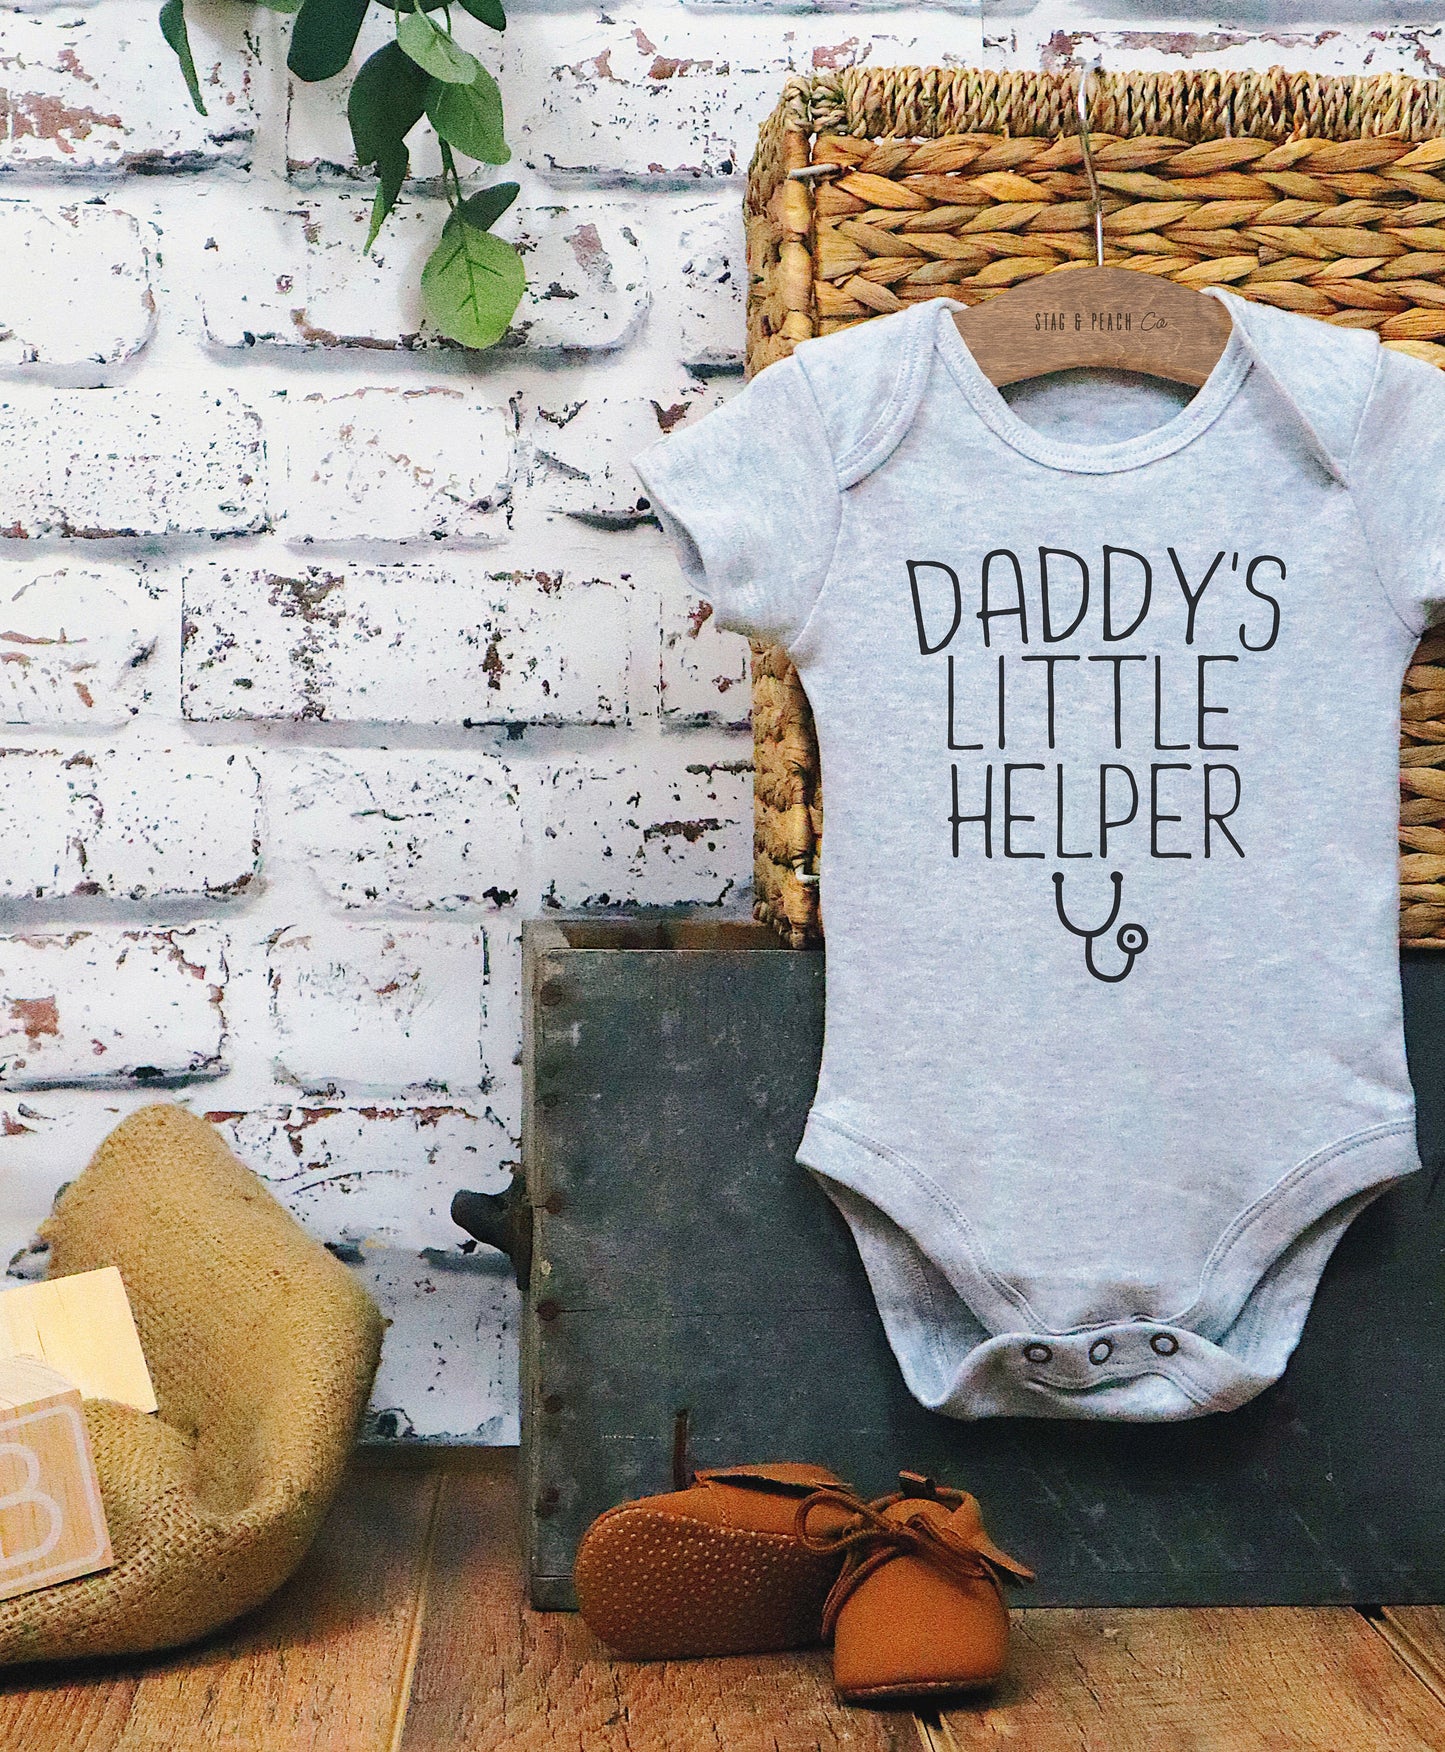 Daddy’s Little Helper Baby Bodysuit